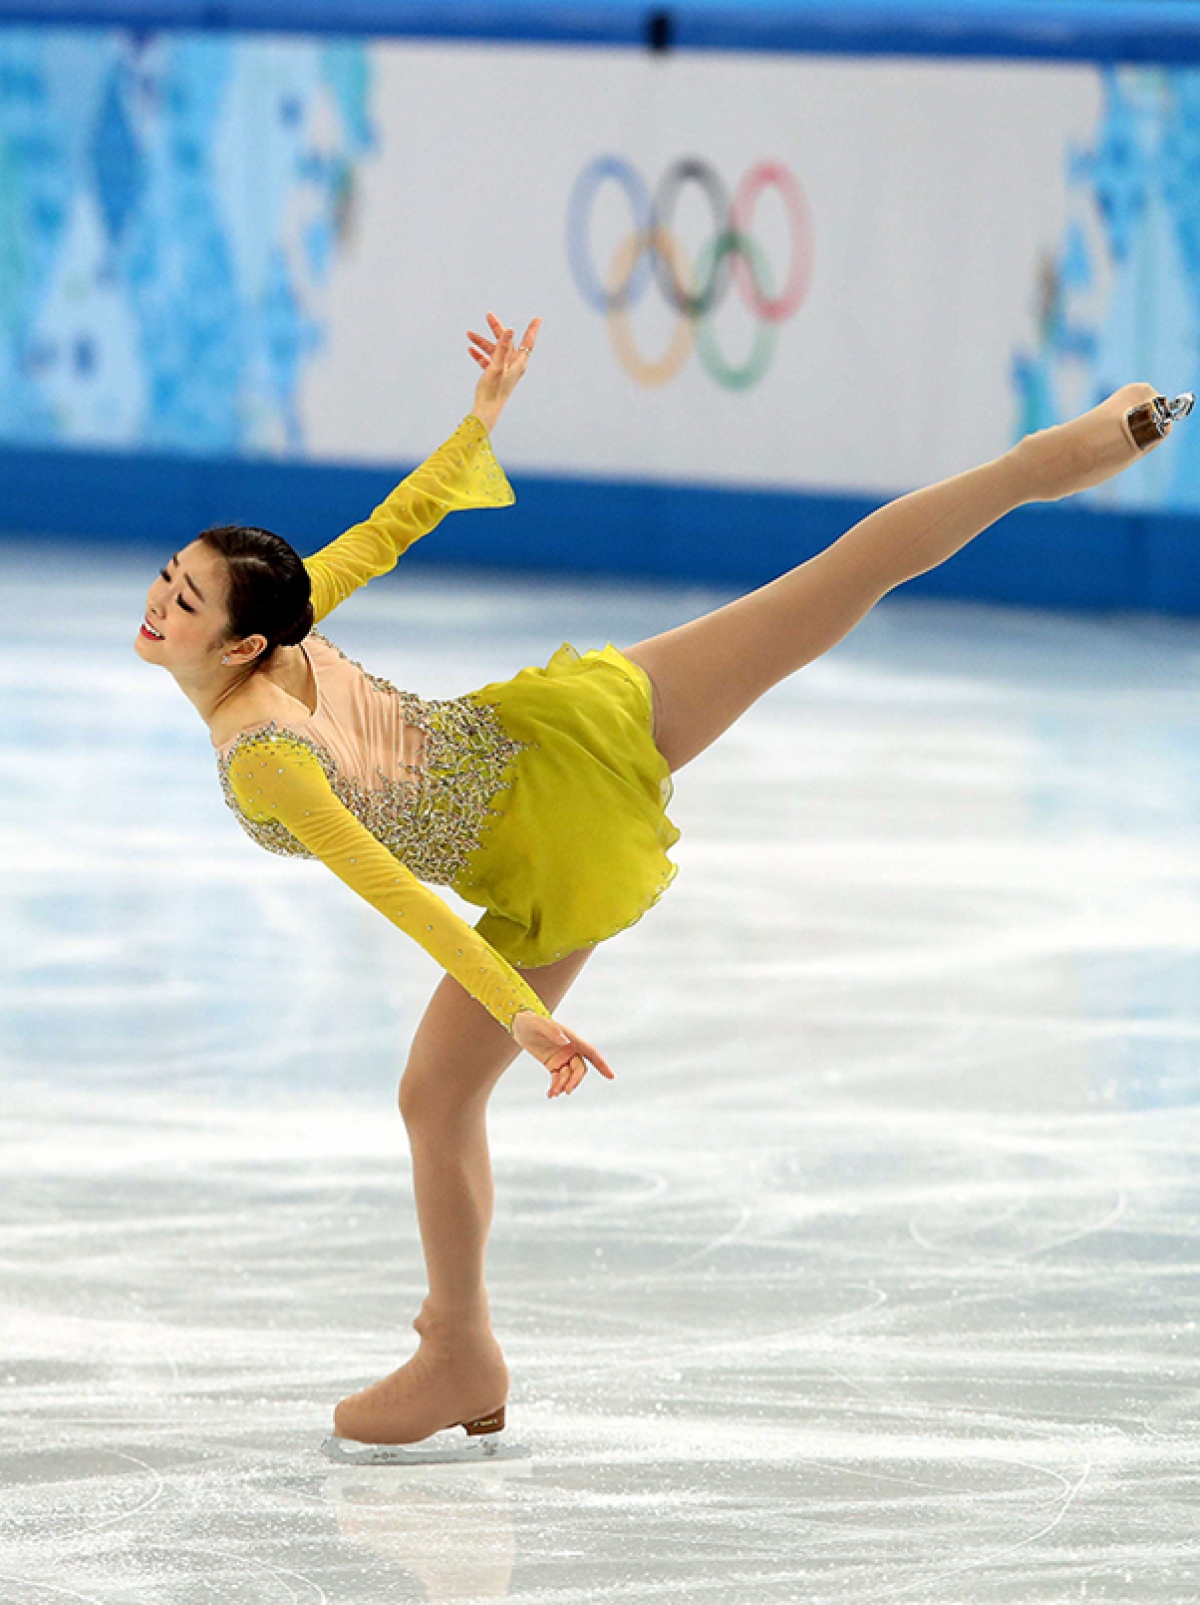 Huyền thoại trượt băng Kim Yuna khoe vẻ thanh lịch, quyến rũ trên tạp chí Elle - Ảnh 7.